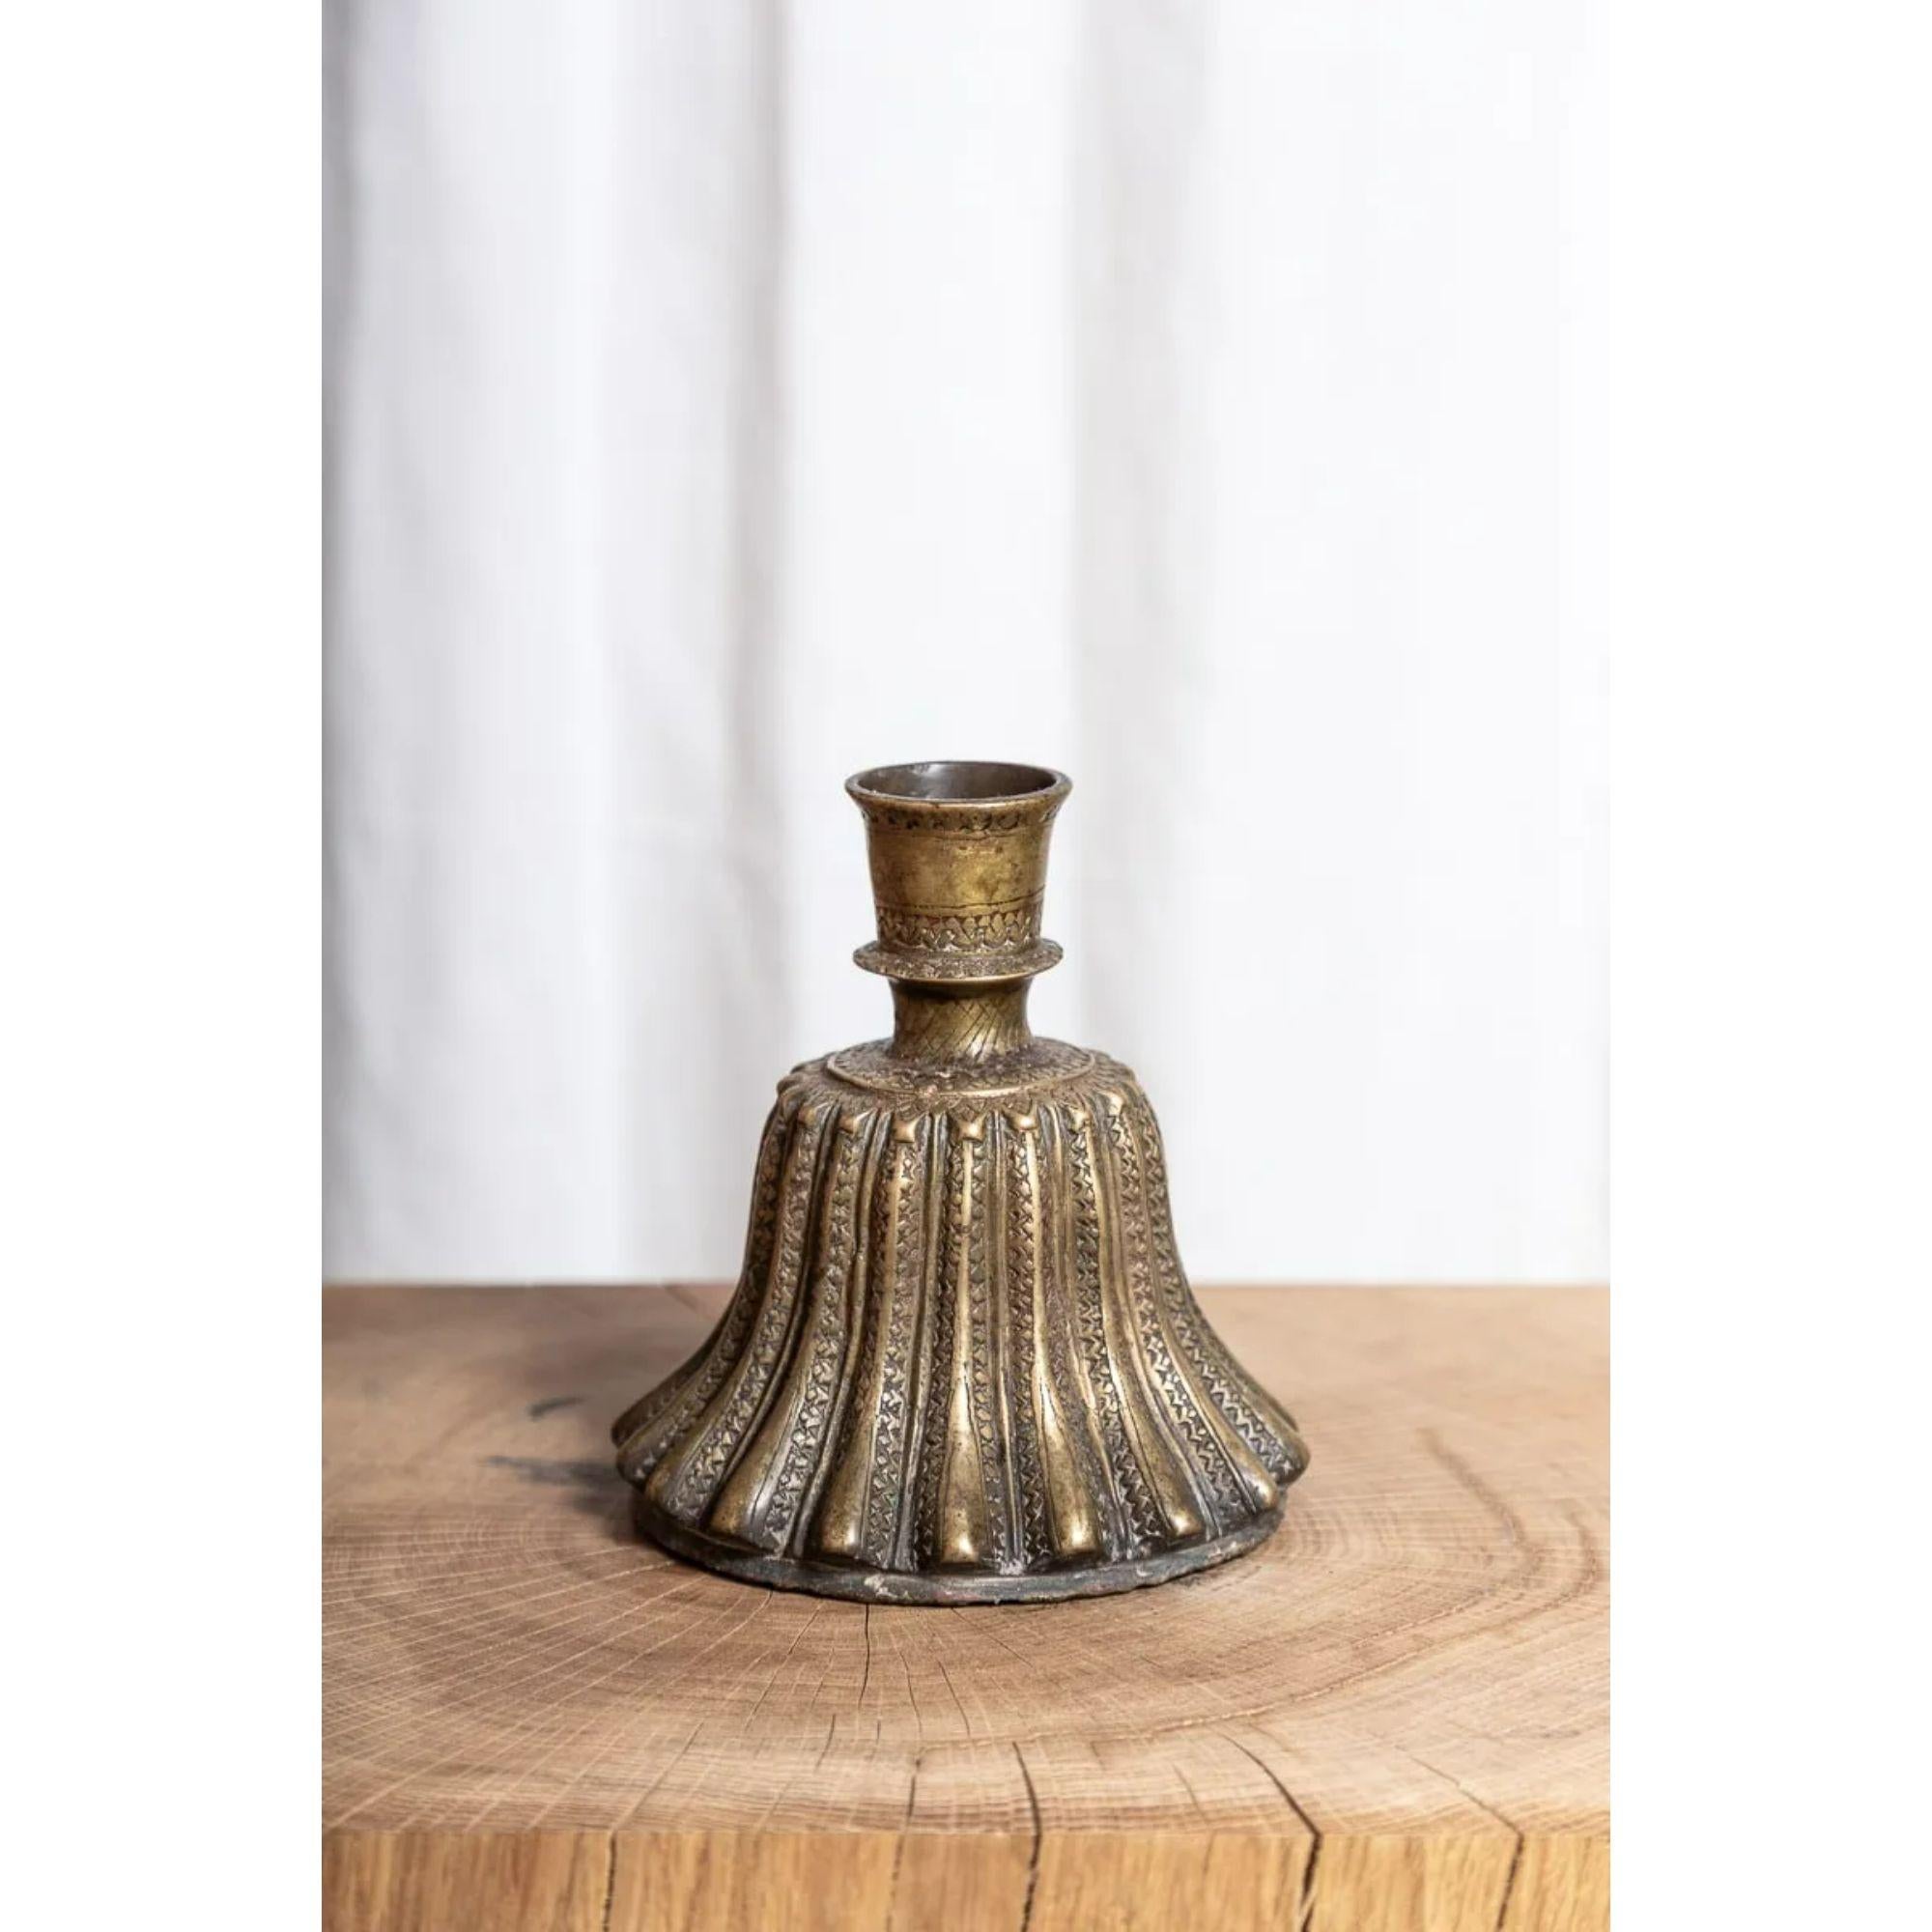 Eine indische Hookah-Basis aus Bronze.

Eine nordindische glockenförmige geriffelte Messingpfeifenbasis.

Abmessungen: H 16,5cm